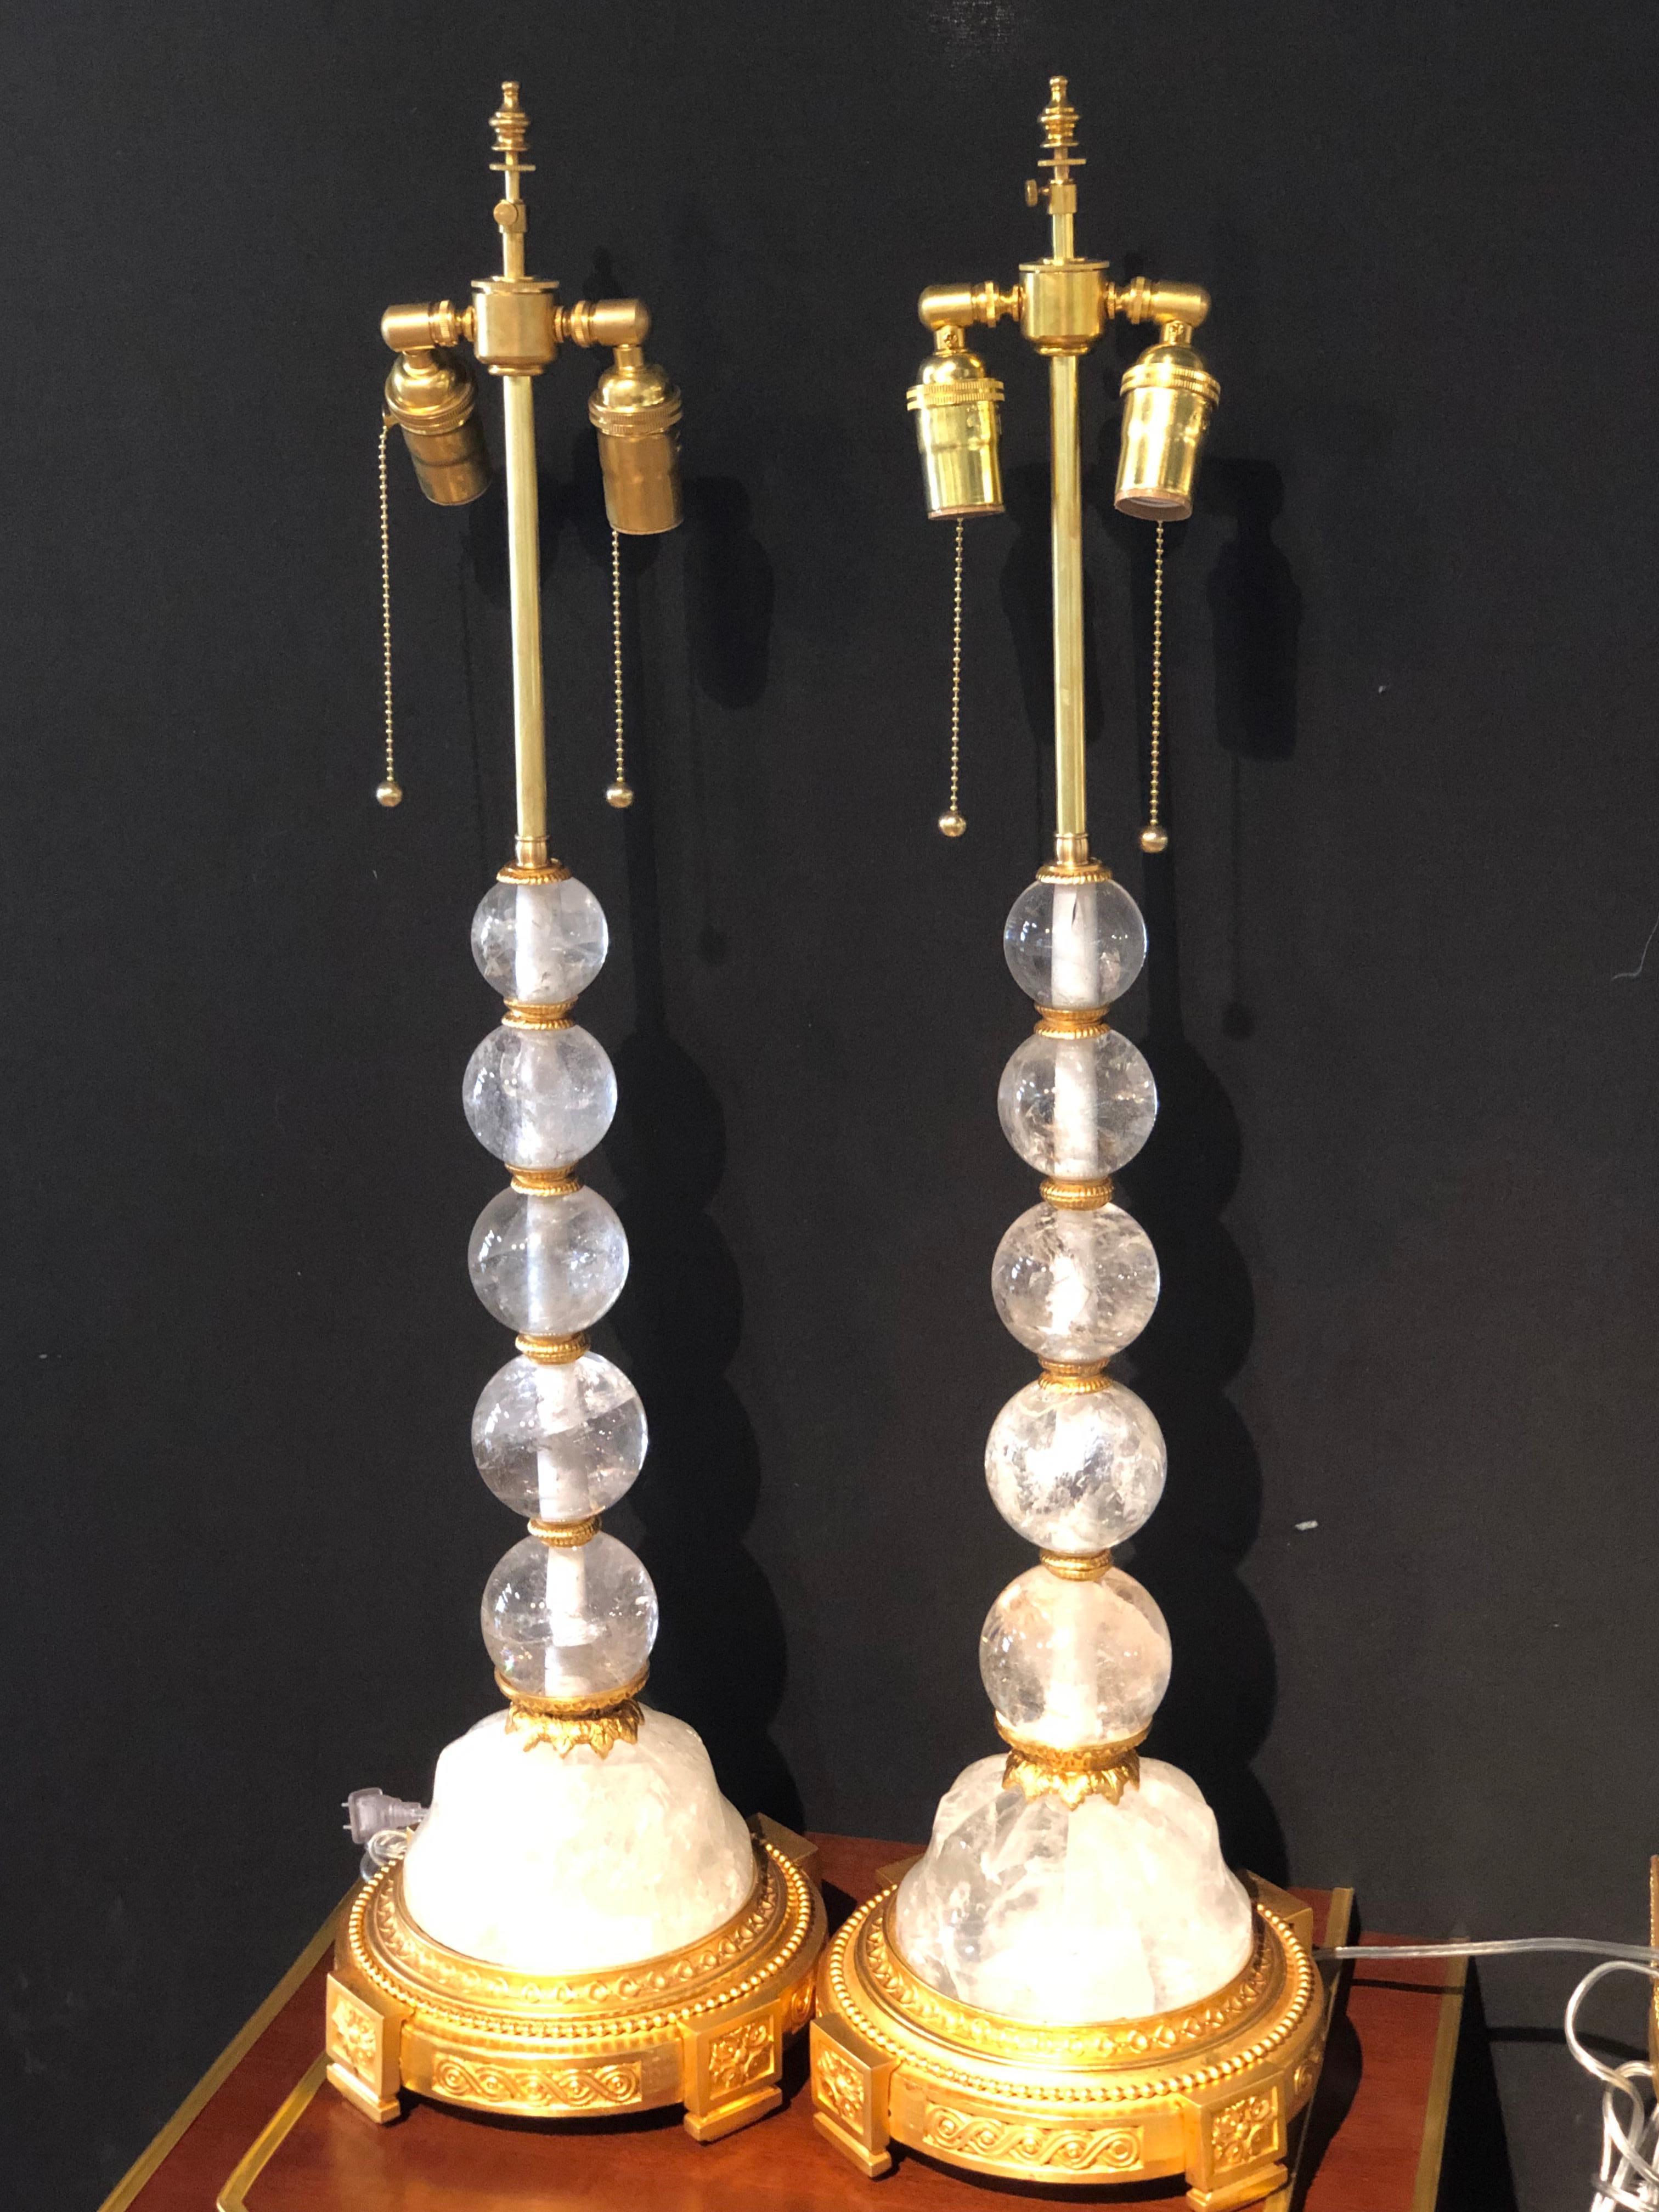 Une belle paire de lampes de table en cristal de roche de style Hollywood Regency ou Art Déco. La paire a des supports en métal doré sur une base en cristal de roche ayant un groupe de boules graduées en cristal de roche menant à des douilles